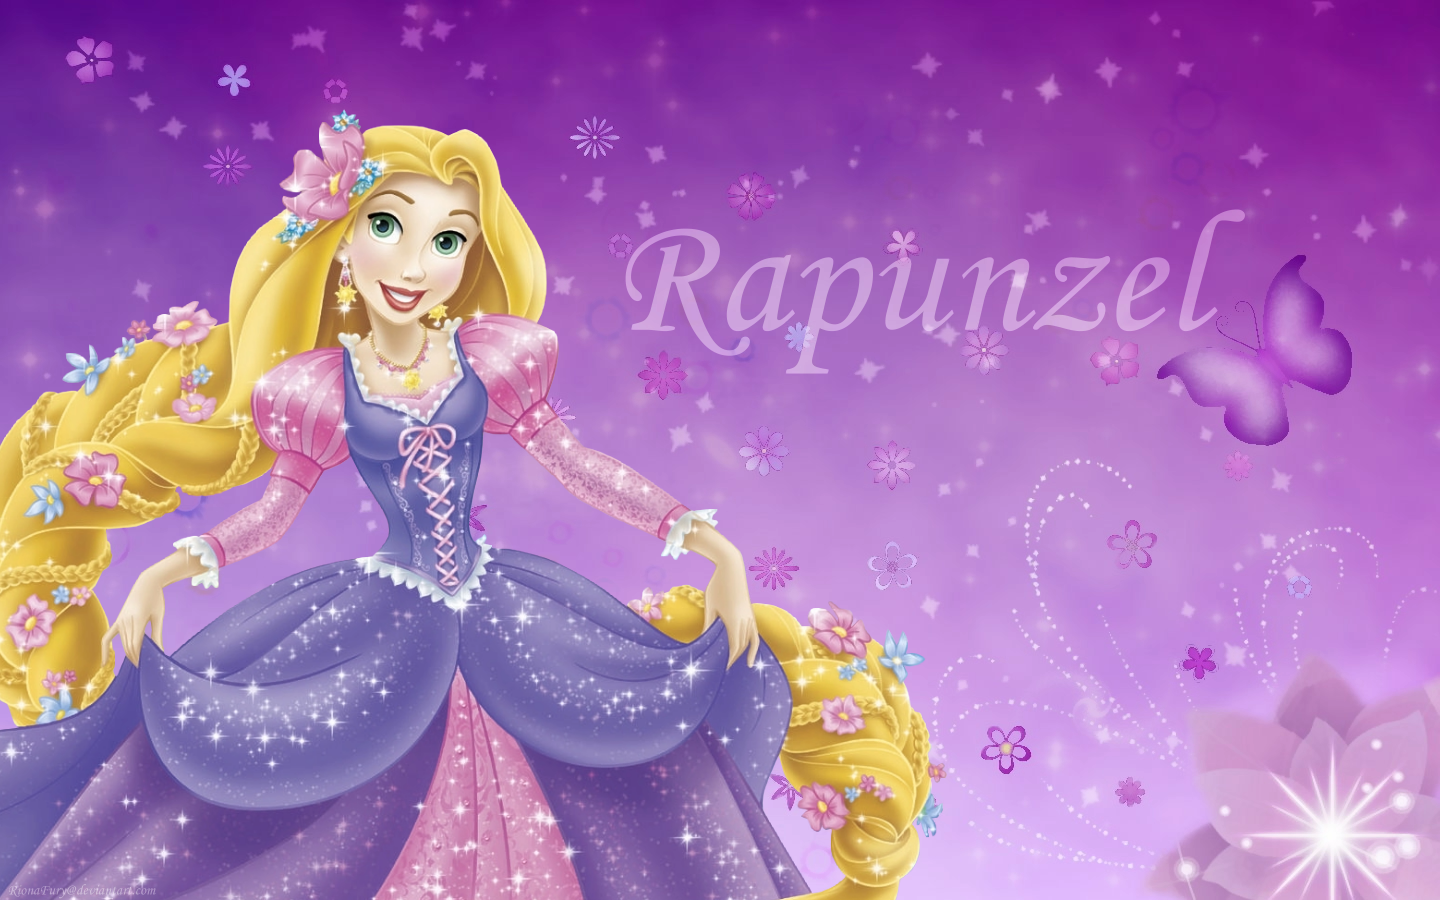 Tangled Image Disney Princess Rapunzel Wallpaper Photos